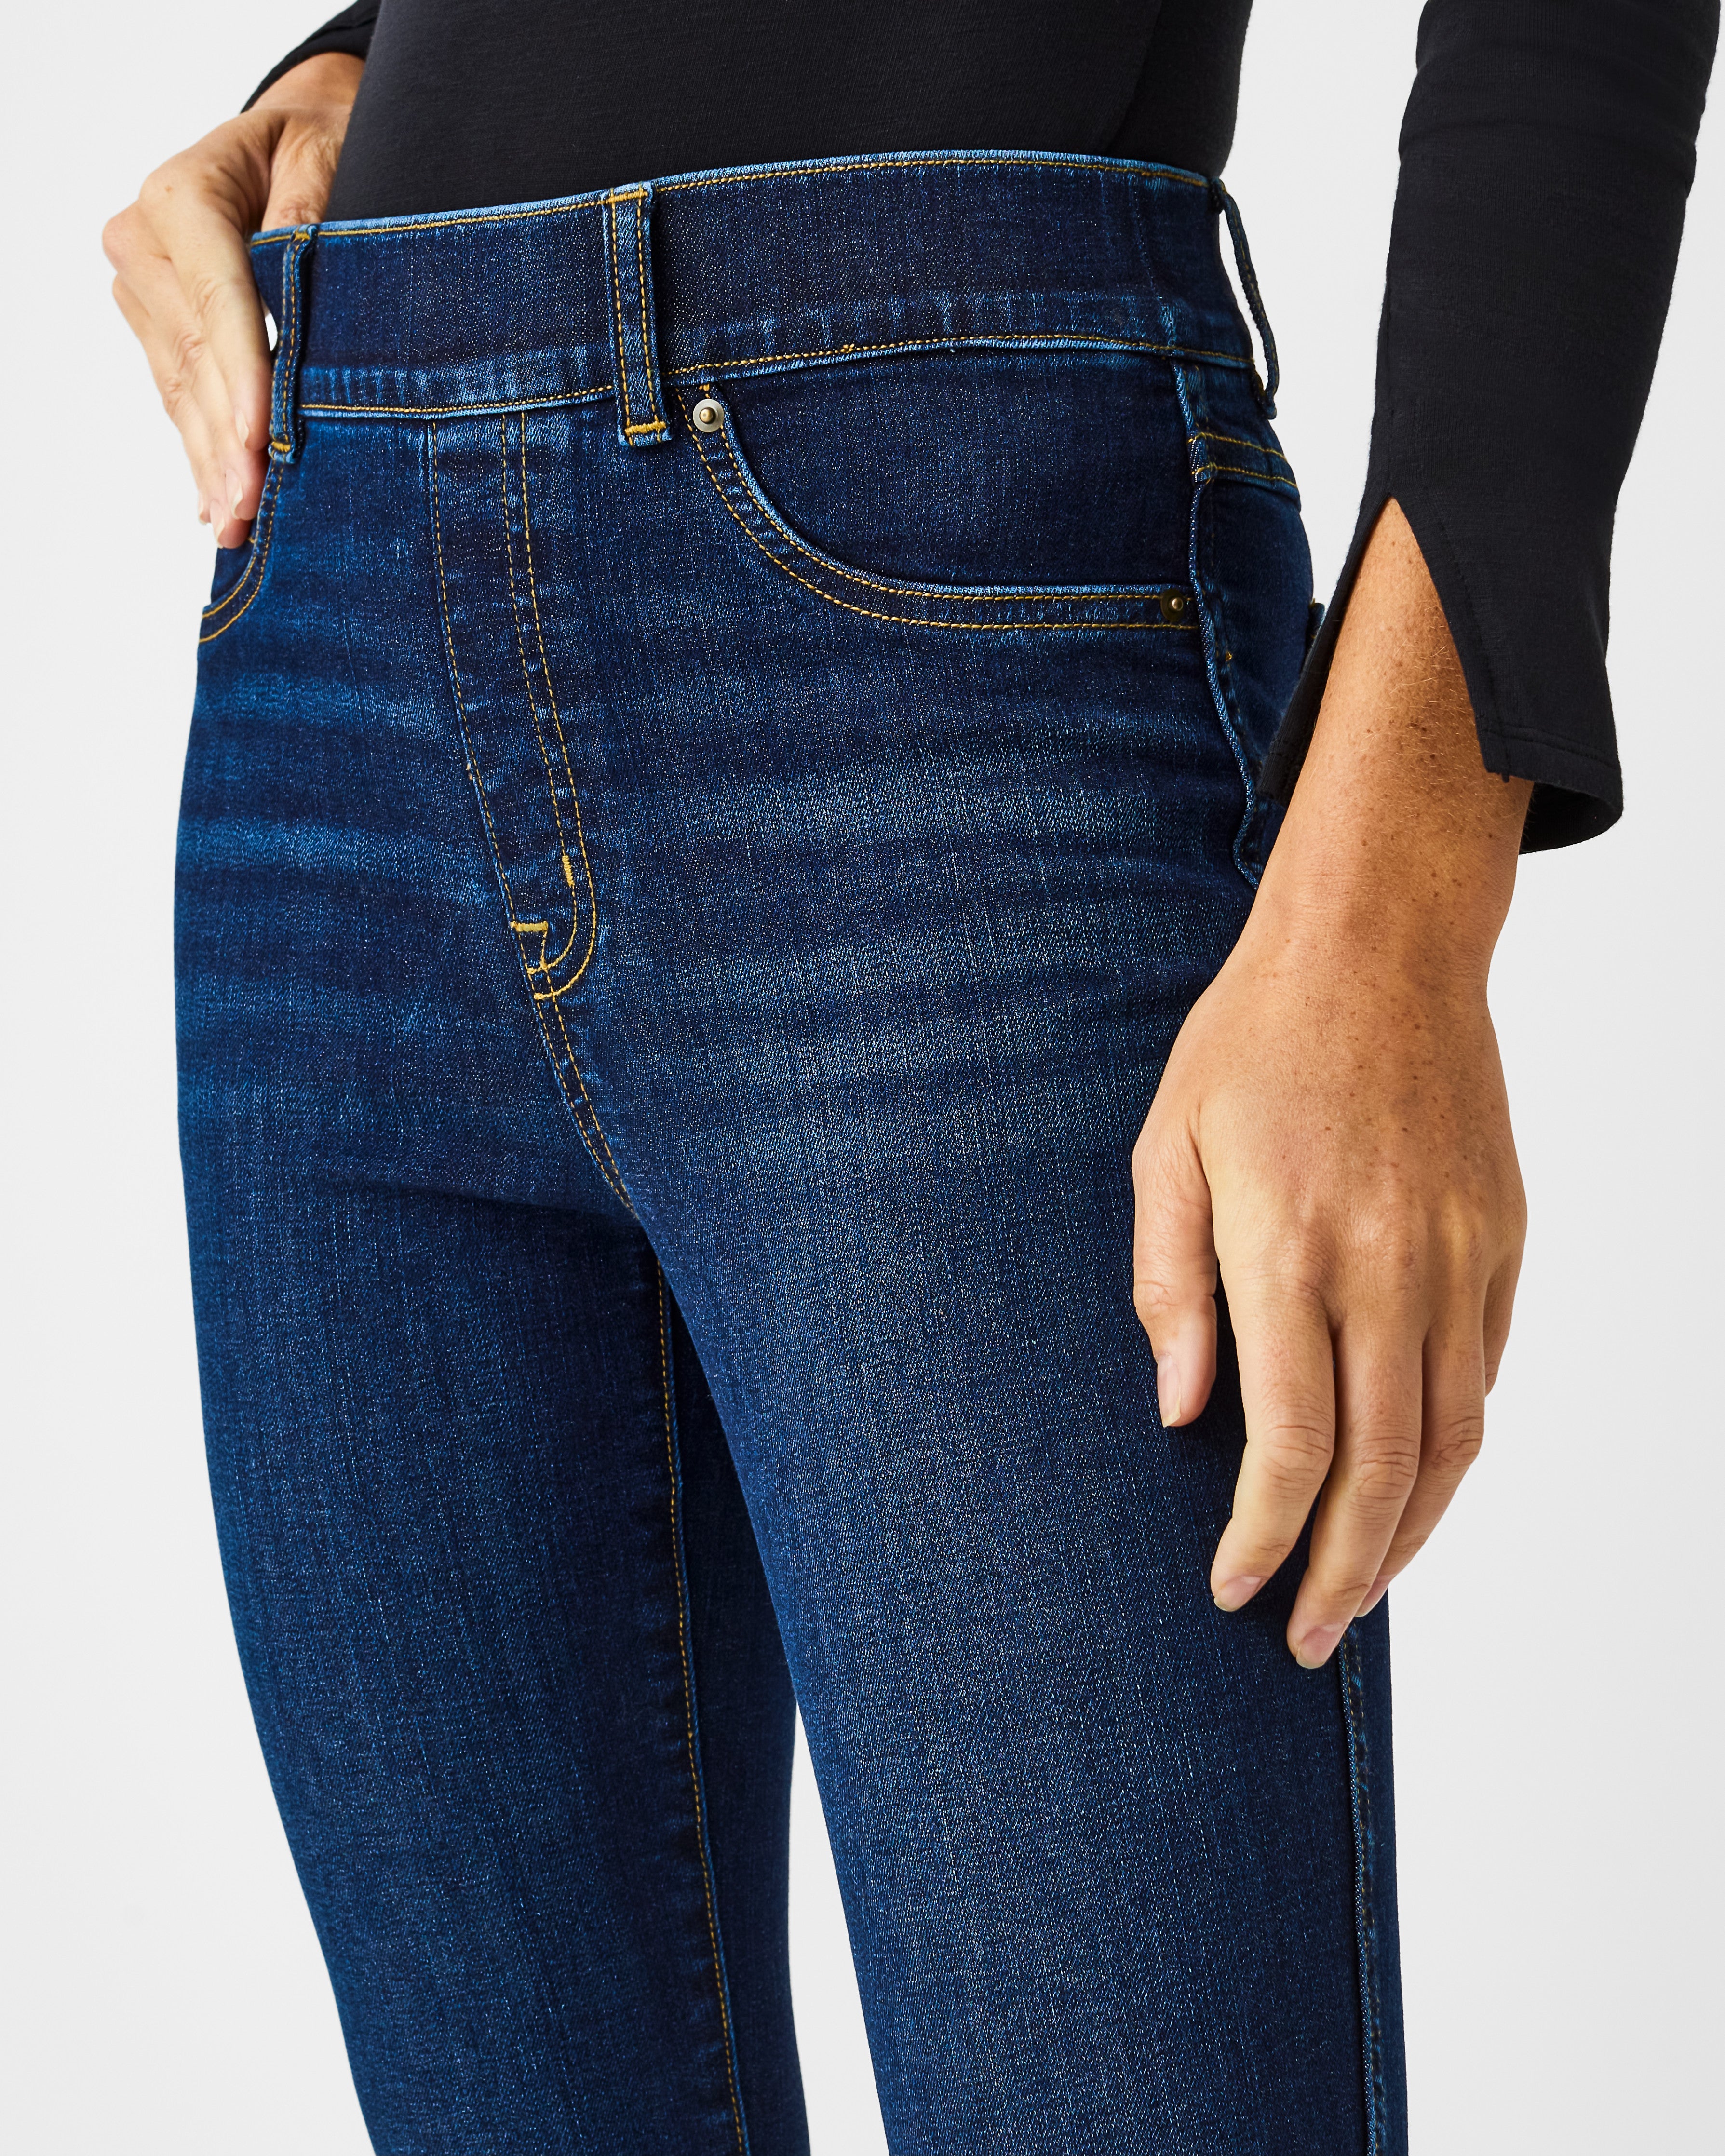 NEW! SPANX Signature Waist Skinny Jeans Back Zip Kirby Denim Size 28  $148.00